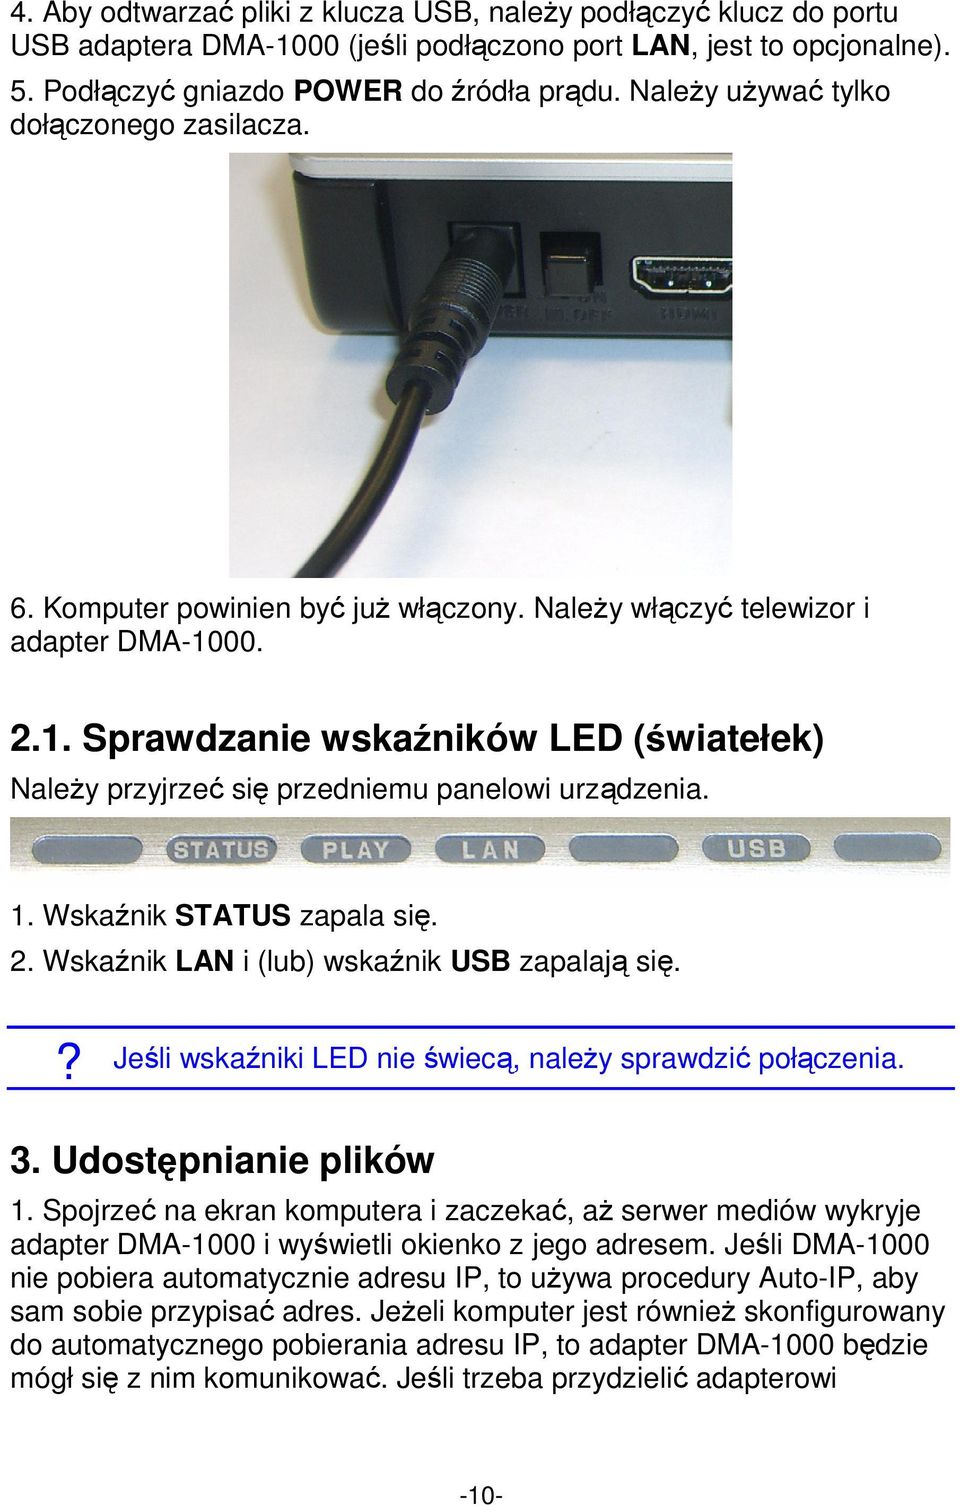 00. 2.1. Sprawdzanie wskaźników LED (światełek) Należy przyjrzeć się przedniemu panelowi urządzenia. 1. Wskaźnik STATUS zapala się. 2. Wskaźnik LAN i (lub) wskaźnik USB zapalają się.